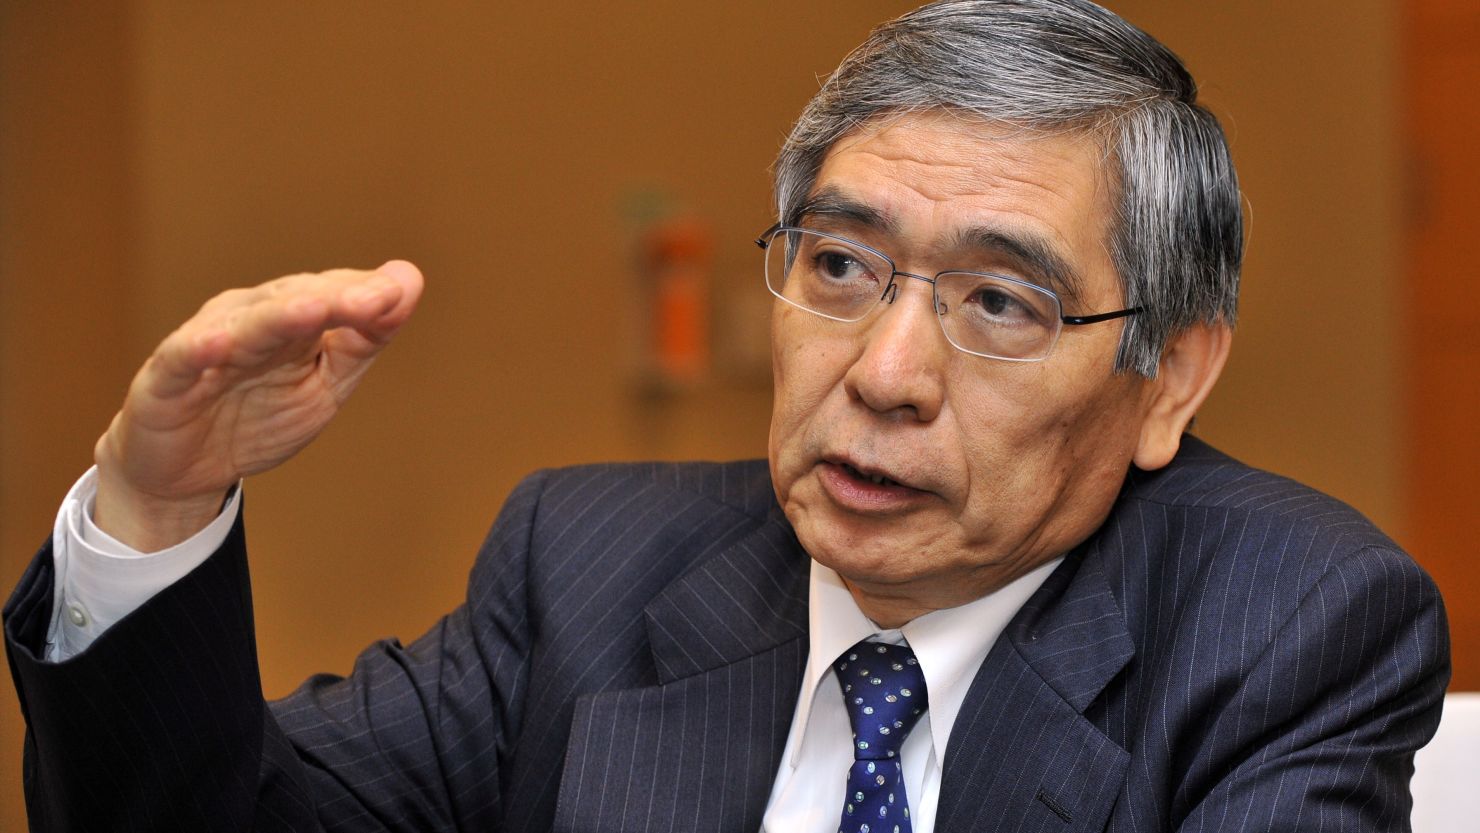 Haruhiko Kuroda unveiled what he called a "new phase" of "quantitative and qualitative monetary easing